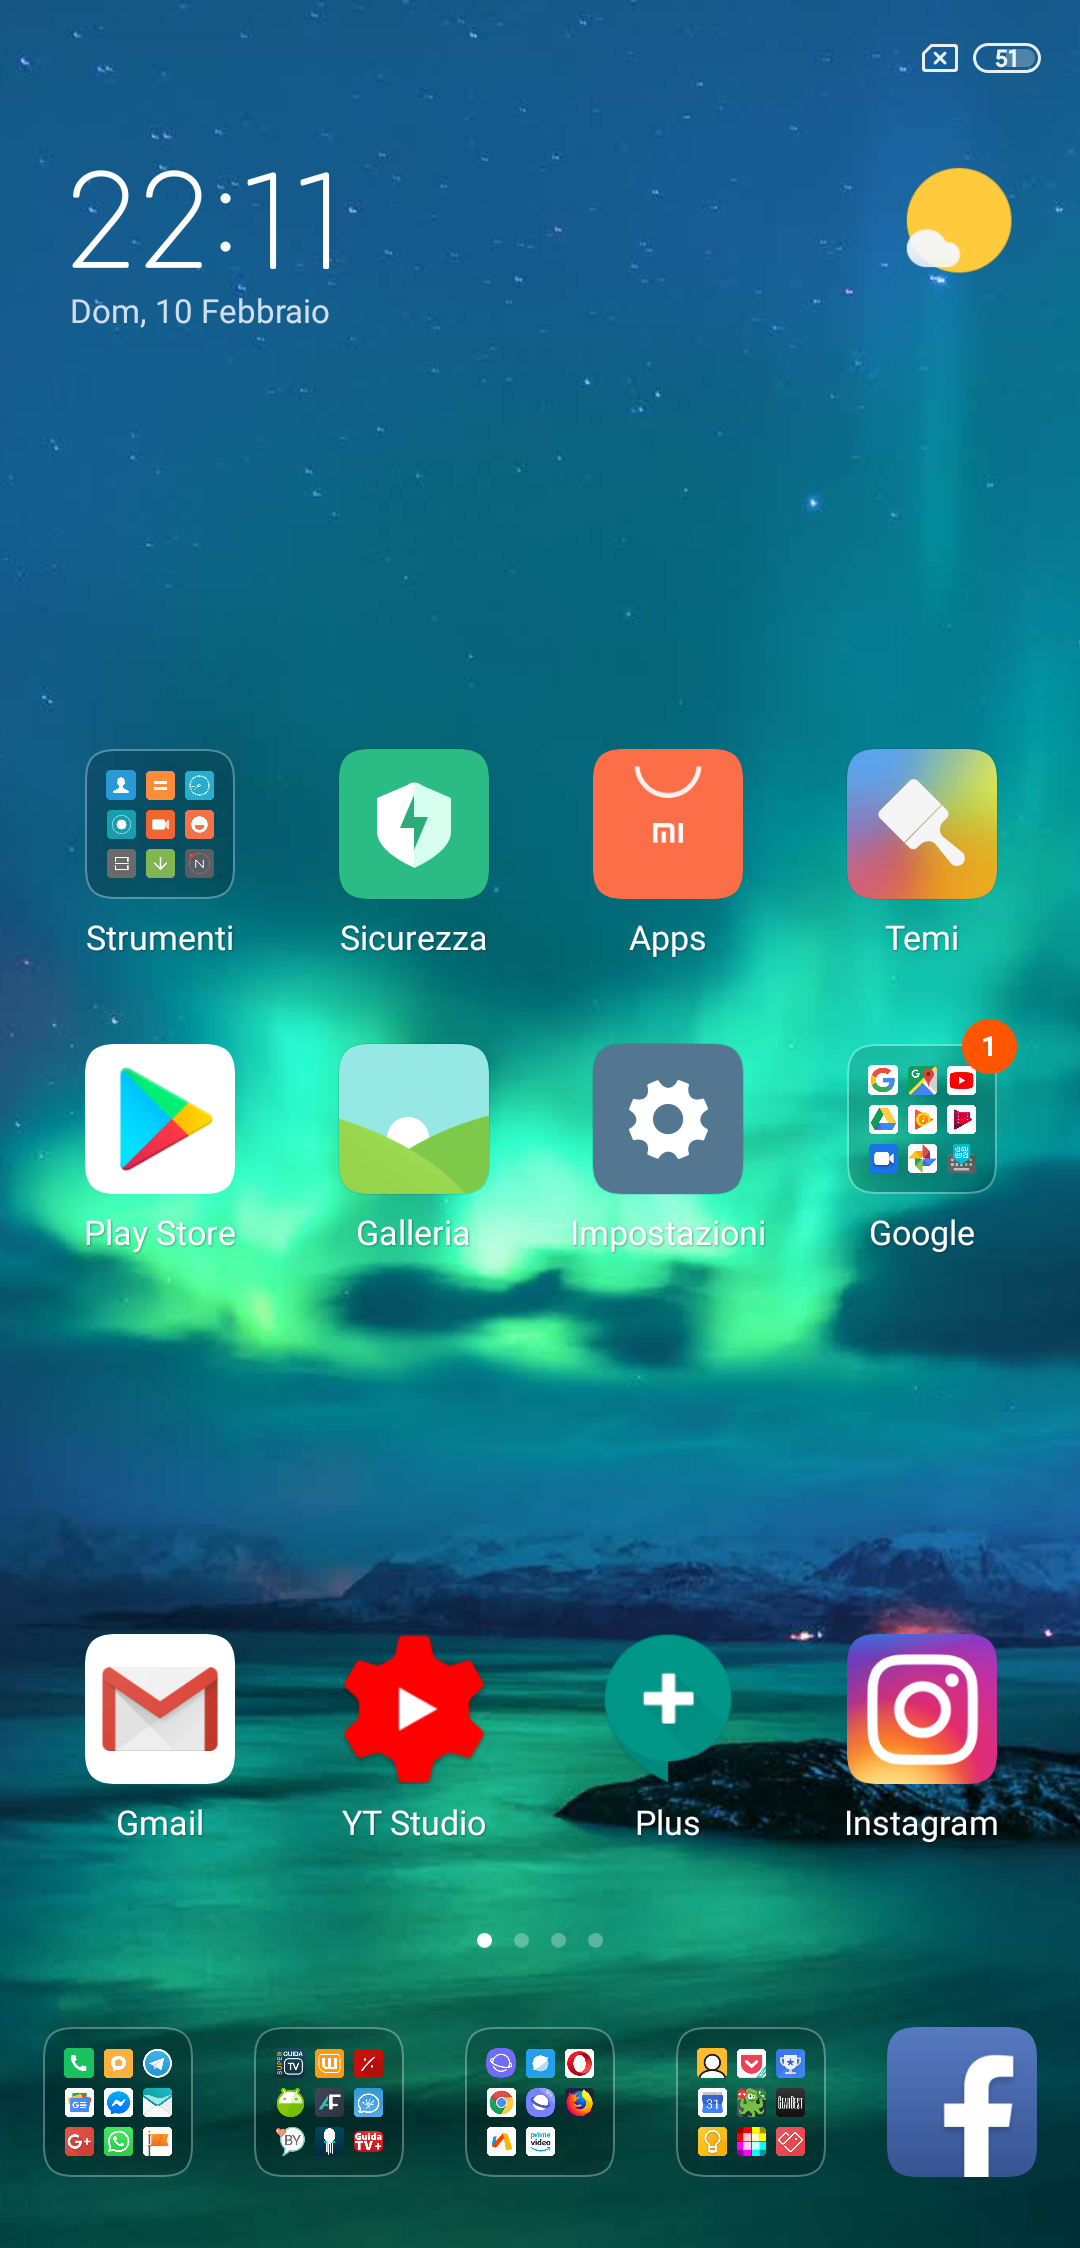 screenshot 2019 02 10 22 11 48 585 com8638560423507313406 - Xiaomi Mi 8 - recensione